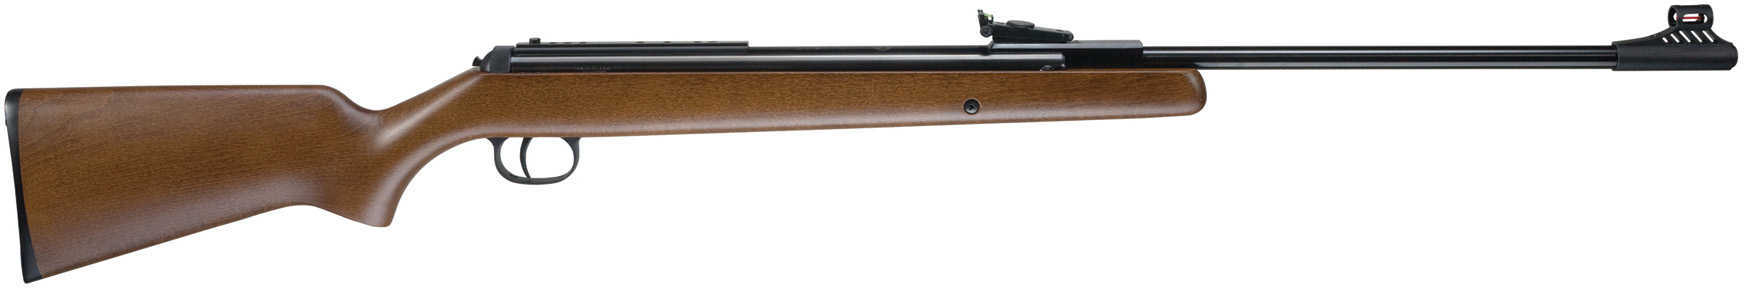 RWS Model 34 Air Rifle .22